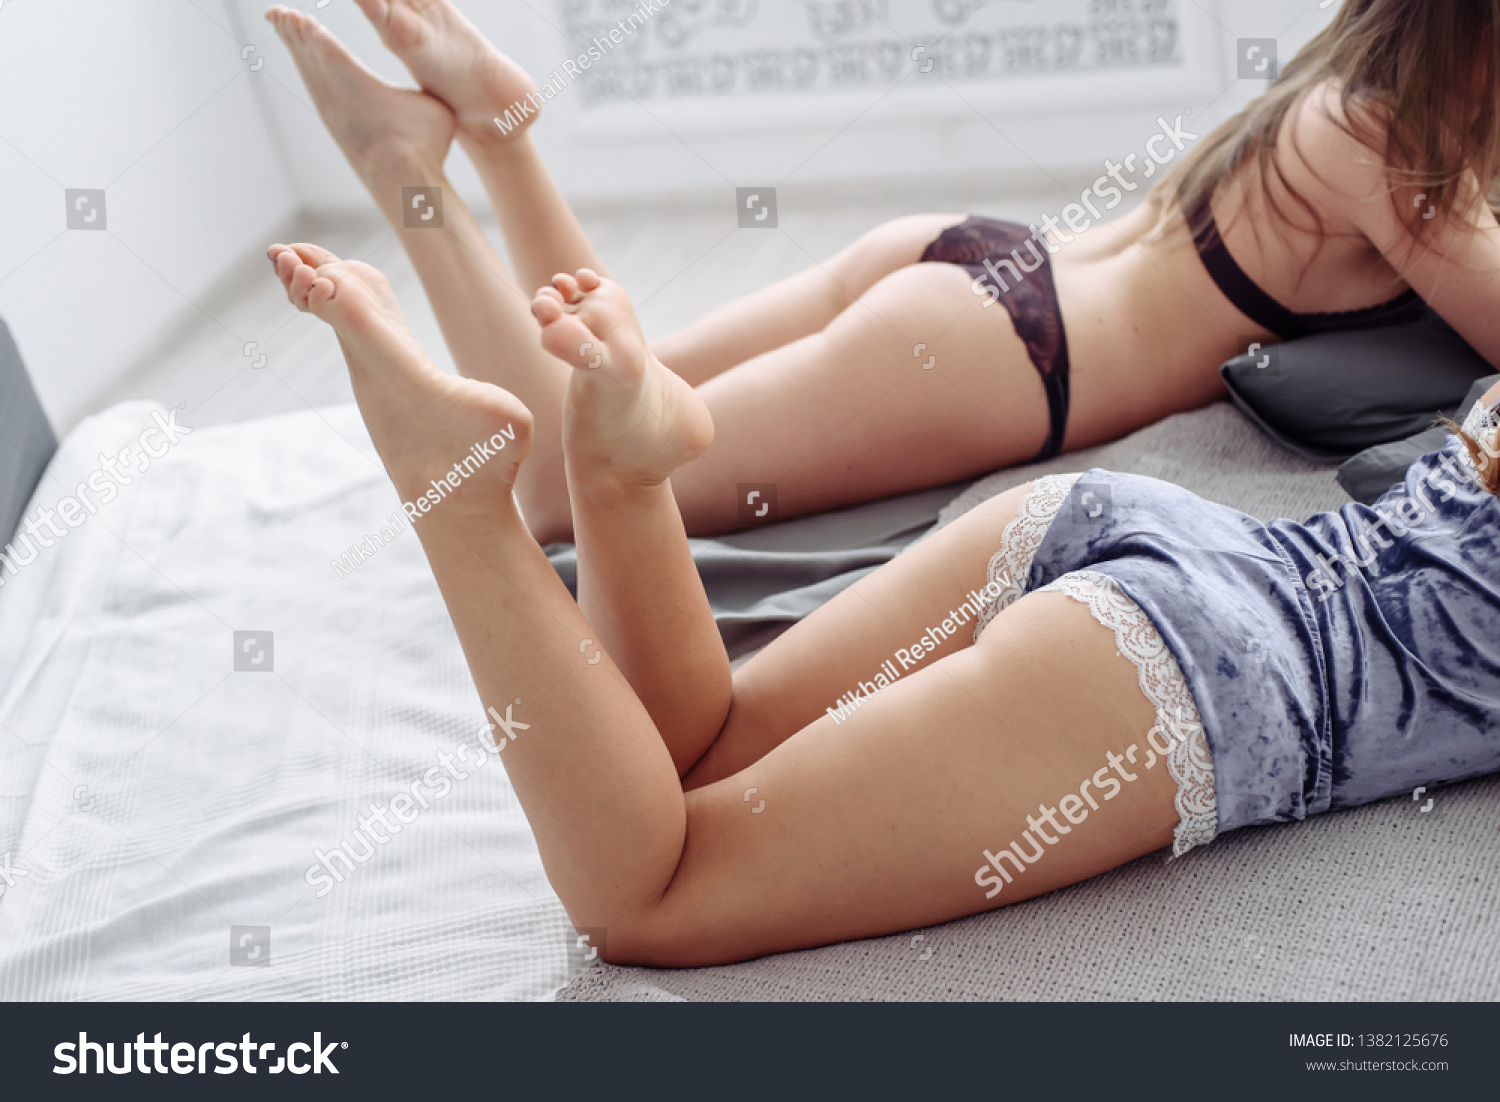 Племянница лёжа на диване ласкает свою грудь фото